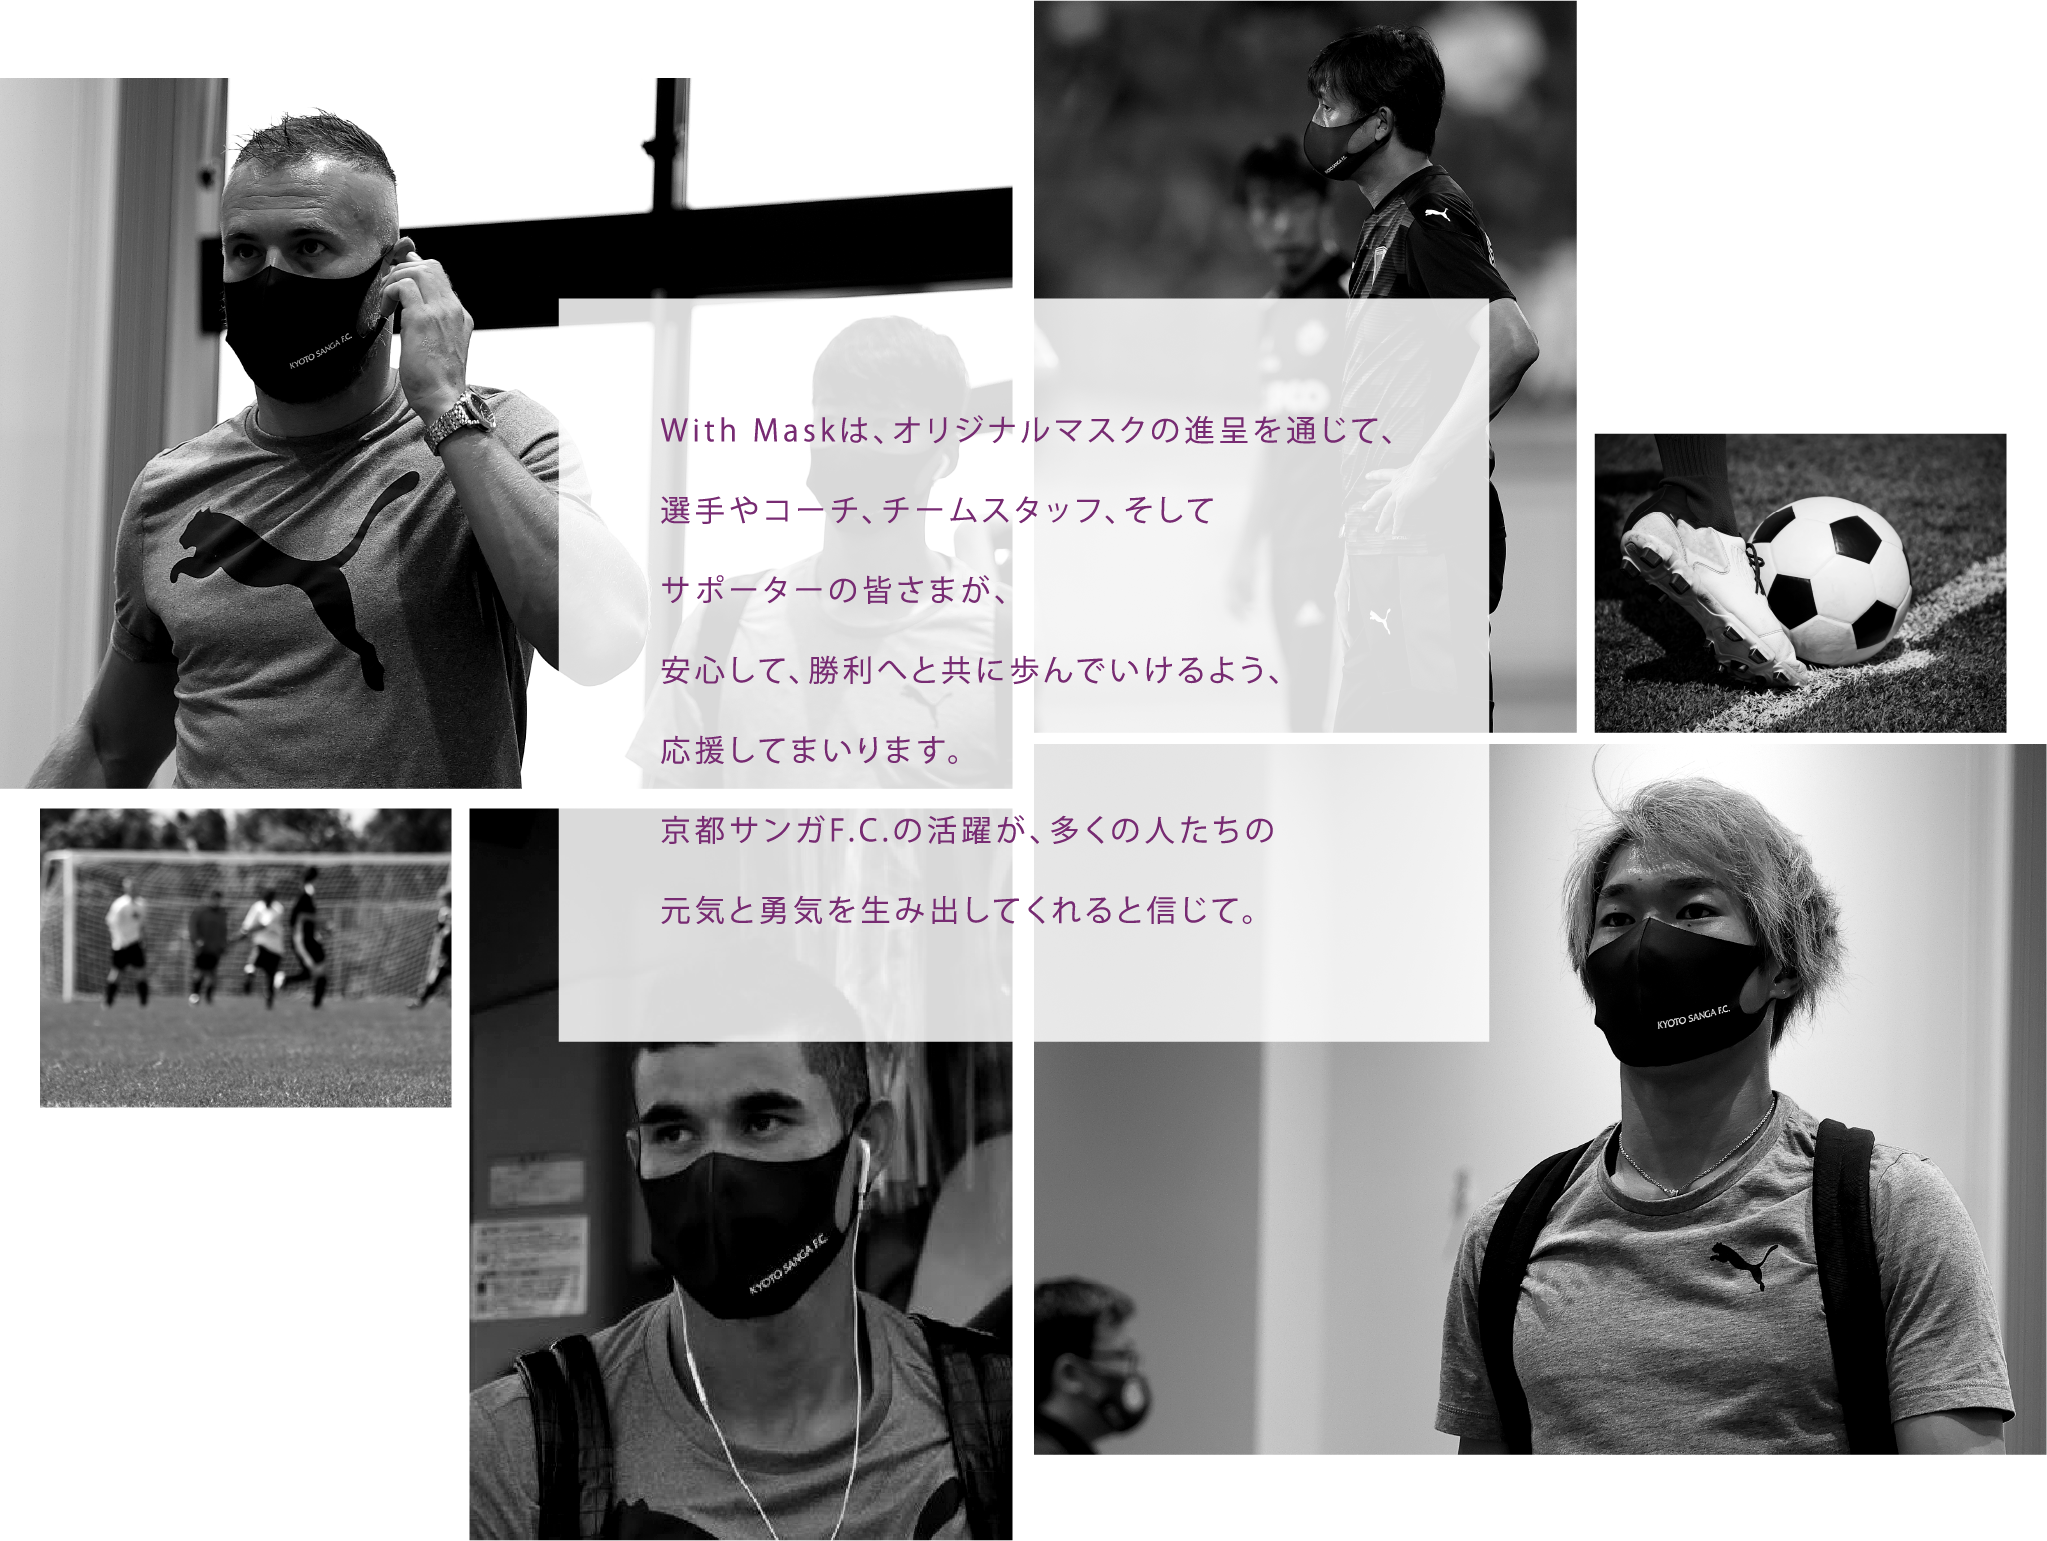 With Maskは、オリジナルマスクの進呈を通じて、選手やコーチ、チームスタッフ、そしてサポーターの皆さまが、安心して、勝利へと共に歩んでいけるよう、応援してまいります。京都サンガF.C.の活躍が、多くの人たちの元気と勇気を生み出してくれると信じて。